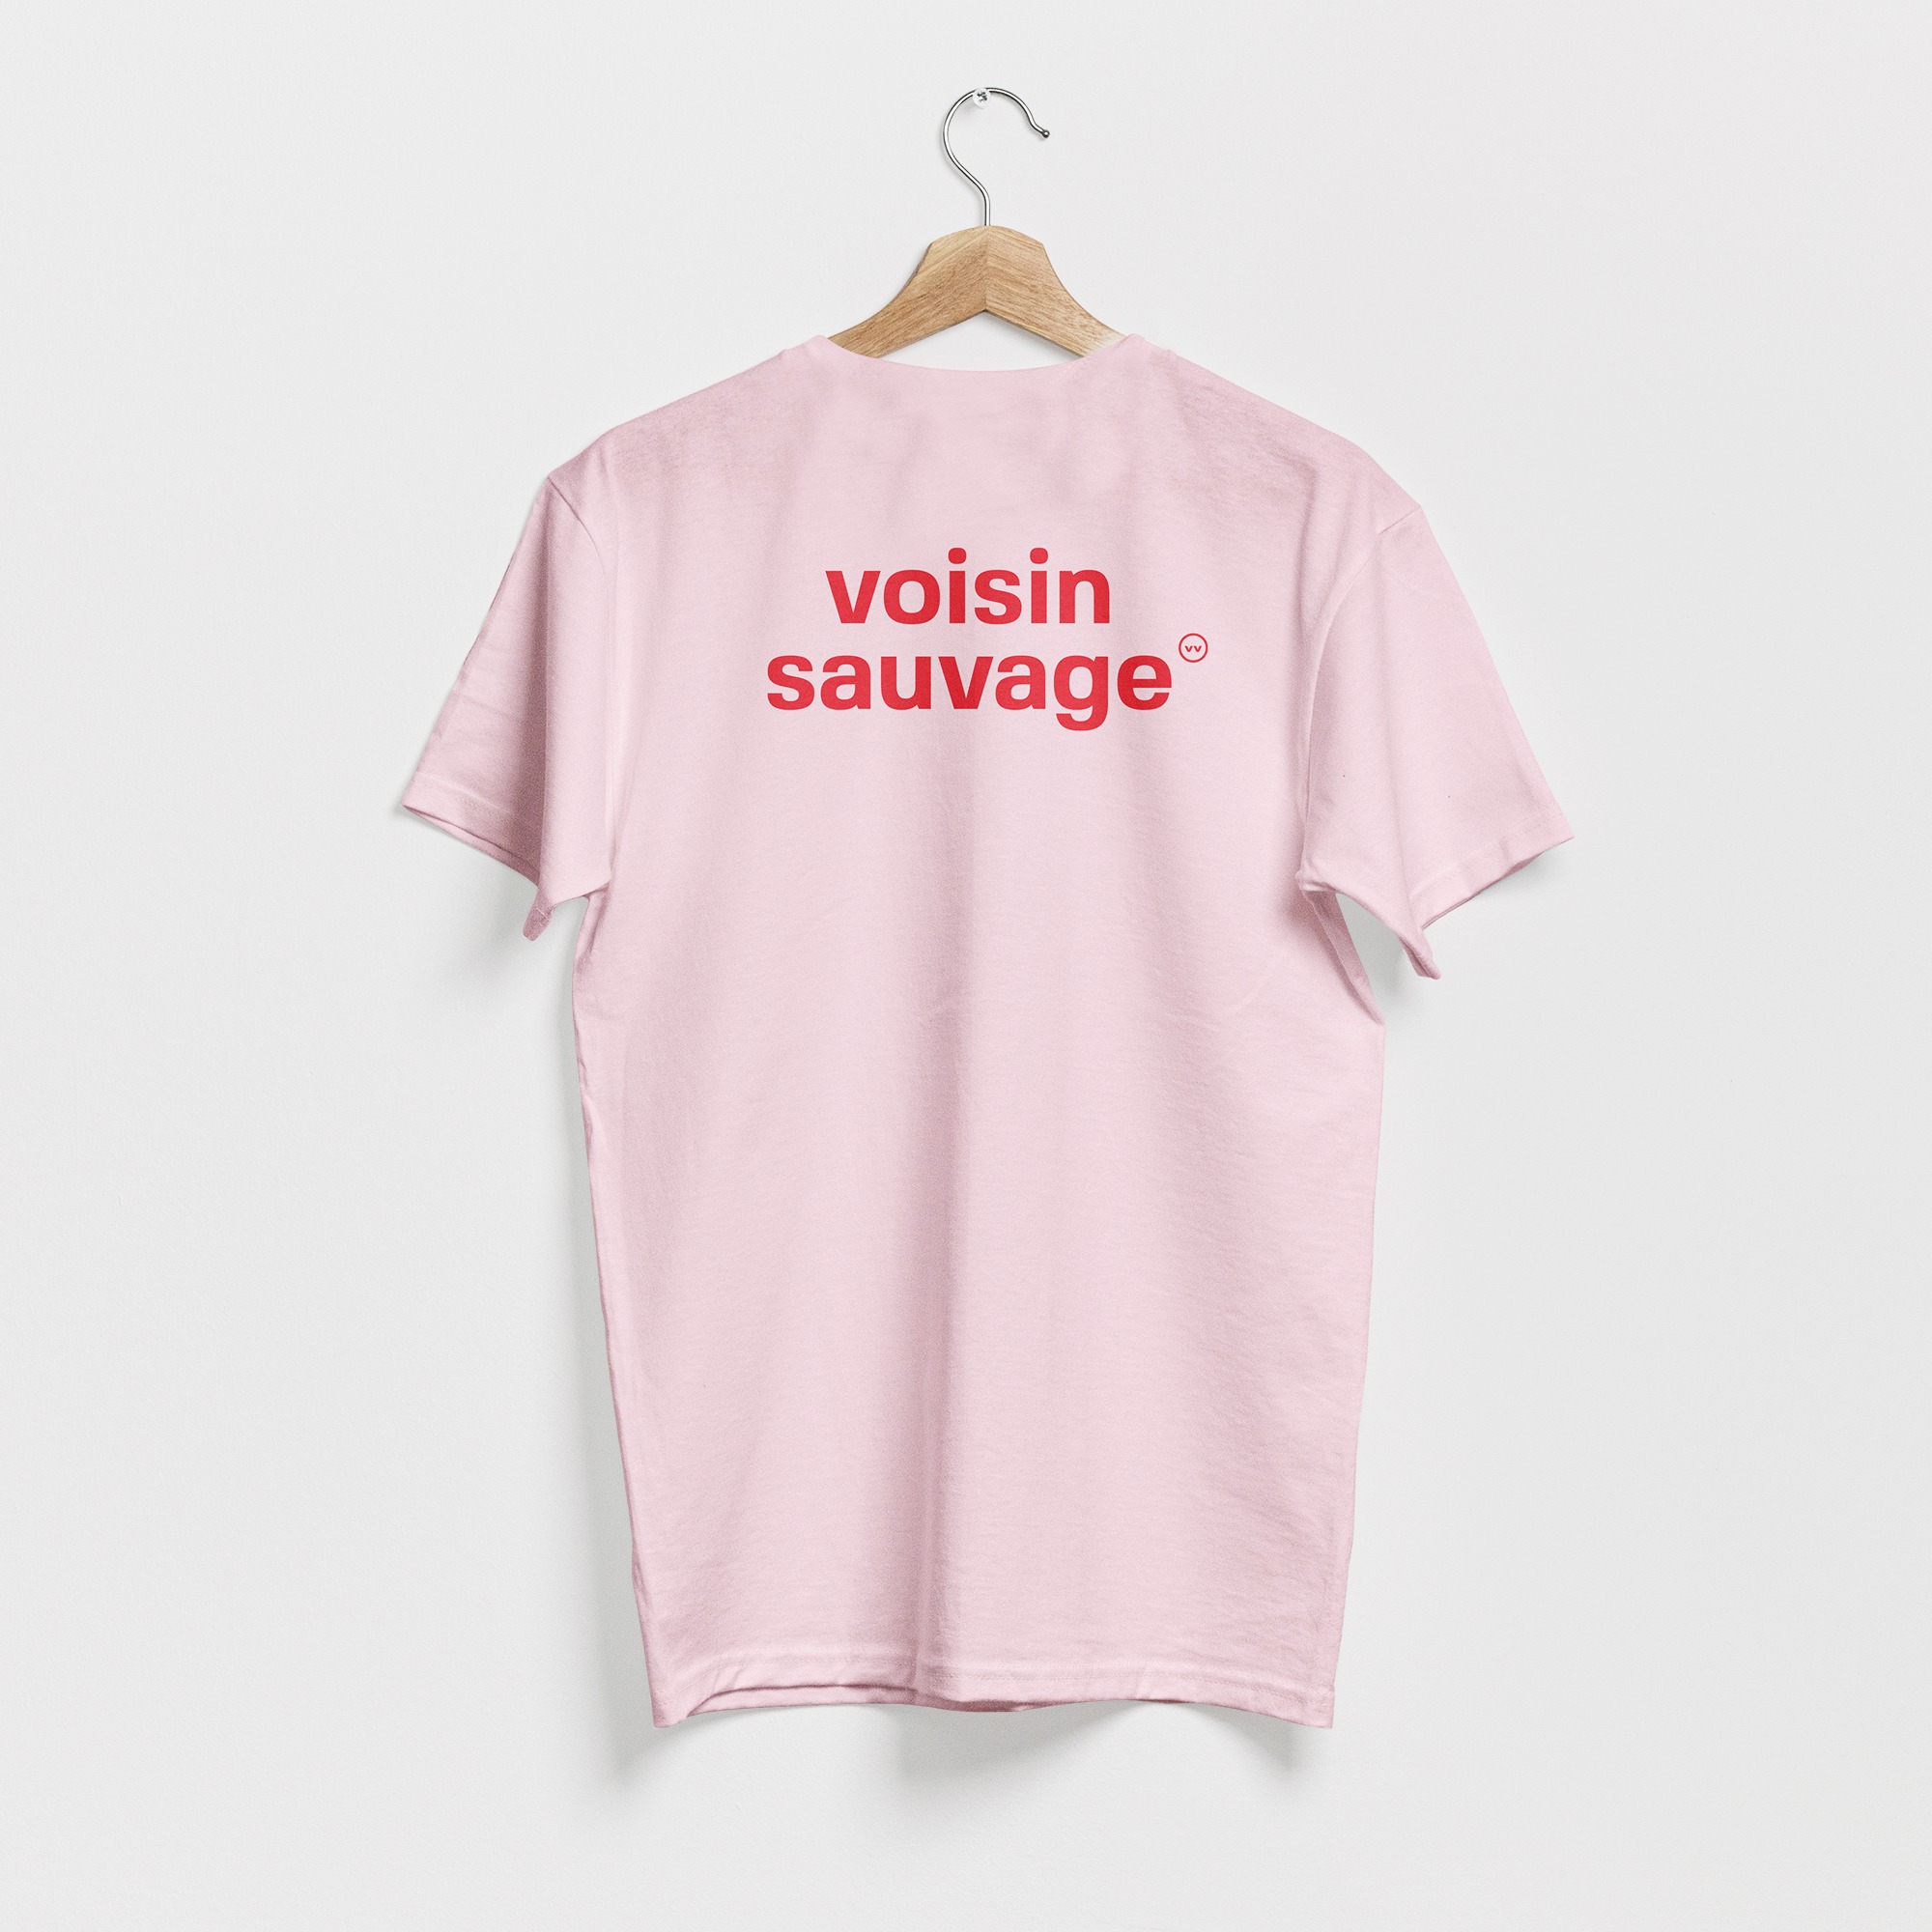 T-shirt rose, avec le texte voisin sauvage en rouge, de vilains-voisins imprimerie et studio de design graphique à Rethel, dans les Ardennes.